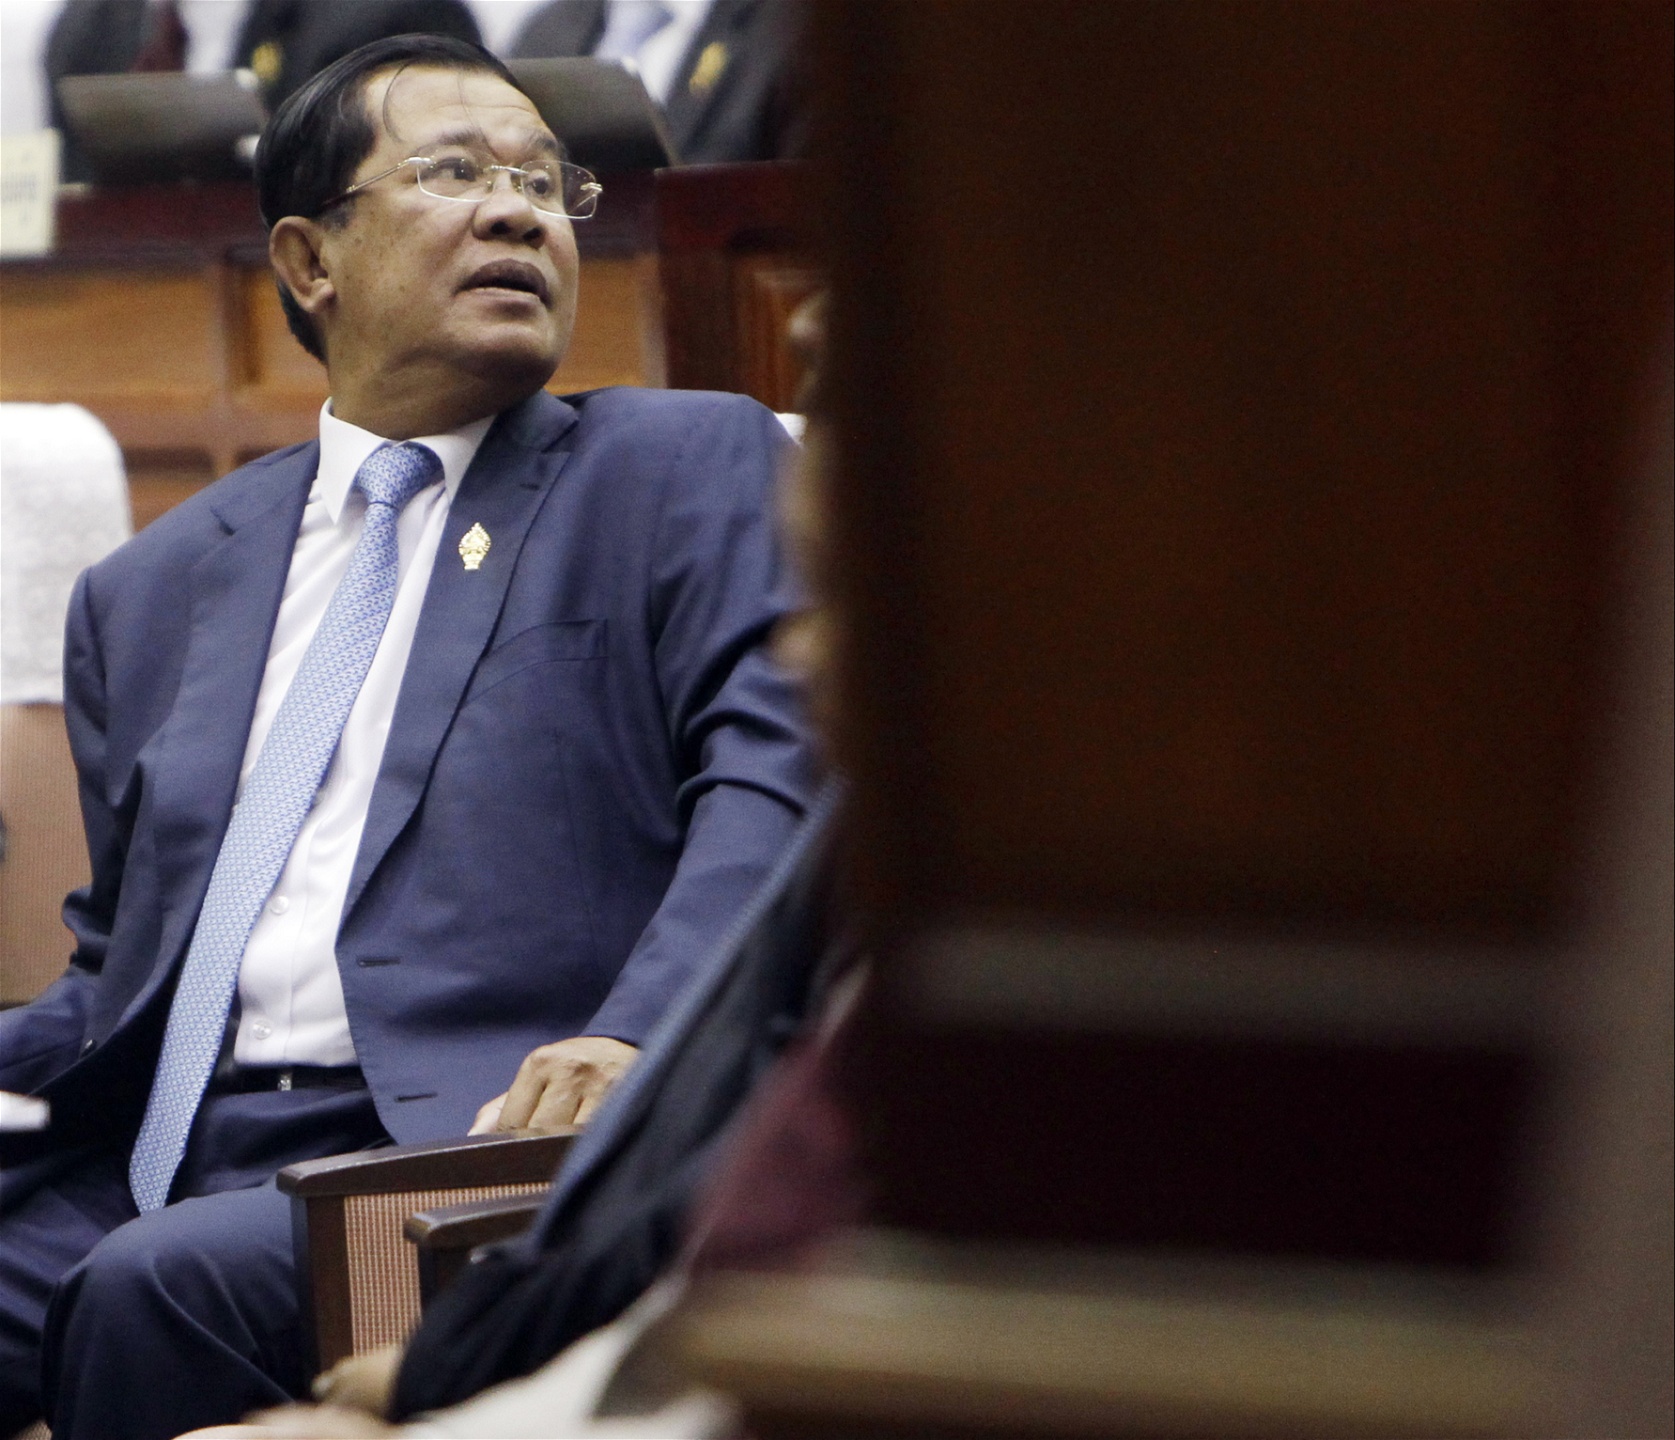 Kambodjas premiärminister Hun Sen har nästan oavbrutet suttit 30 år vid makten.